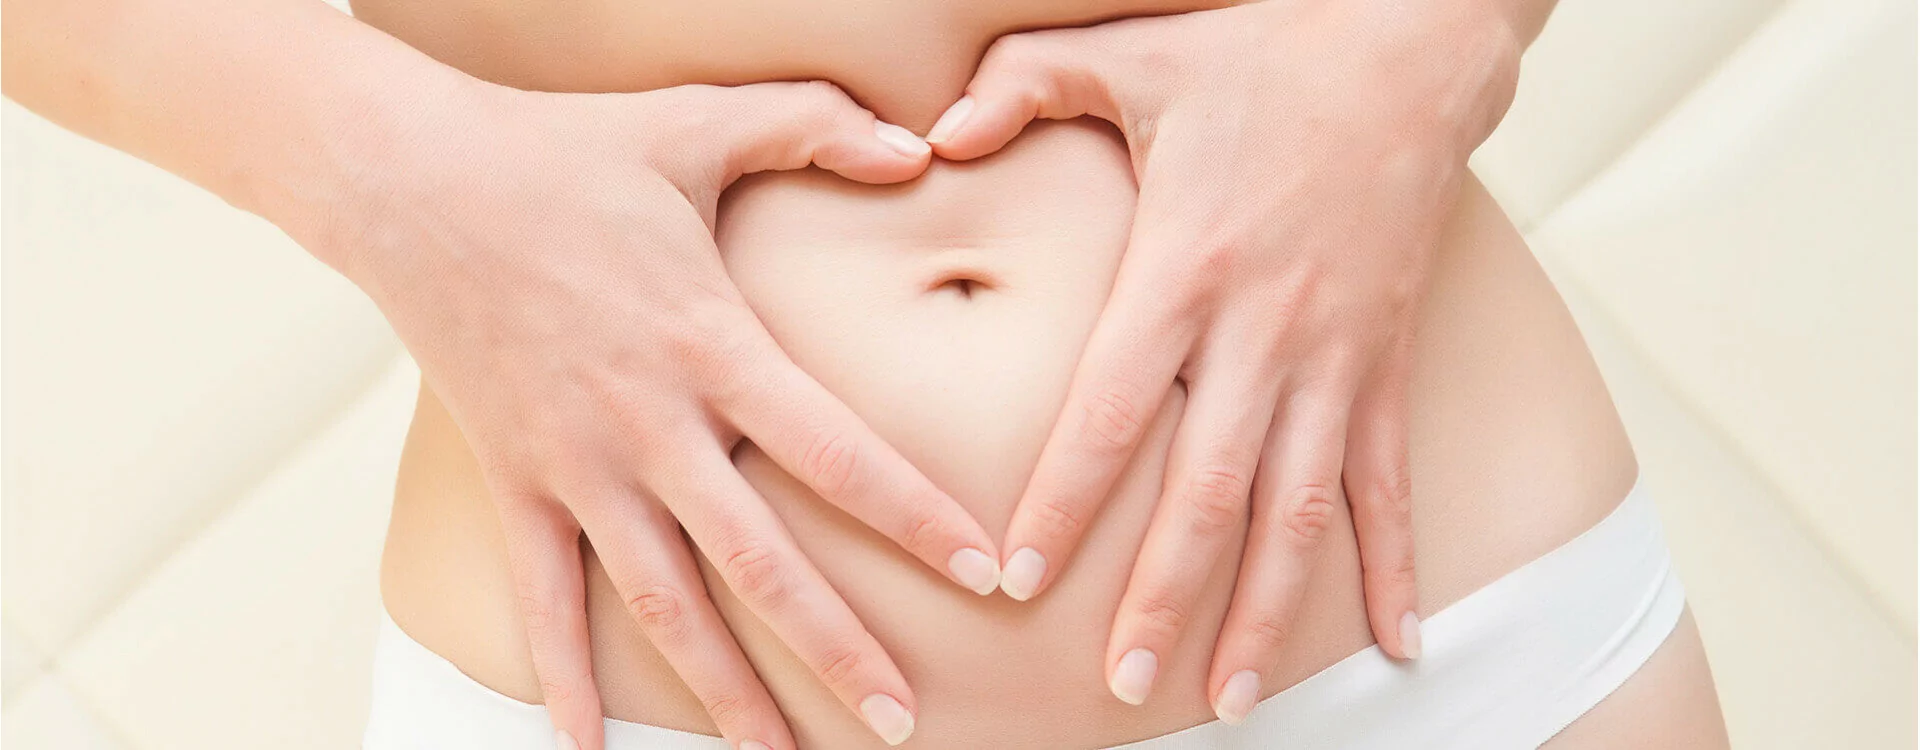 Le mythe du ventre plat chez la femme | Univers Pharmacie